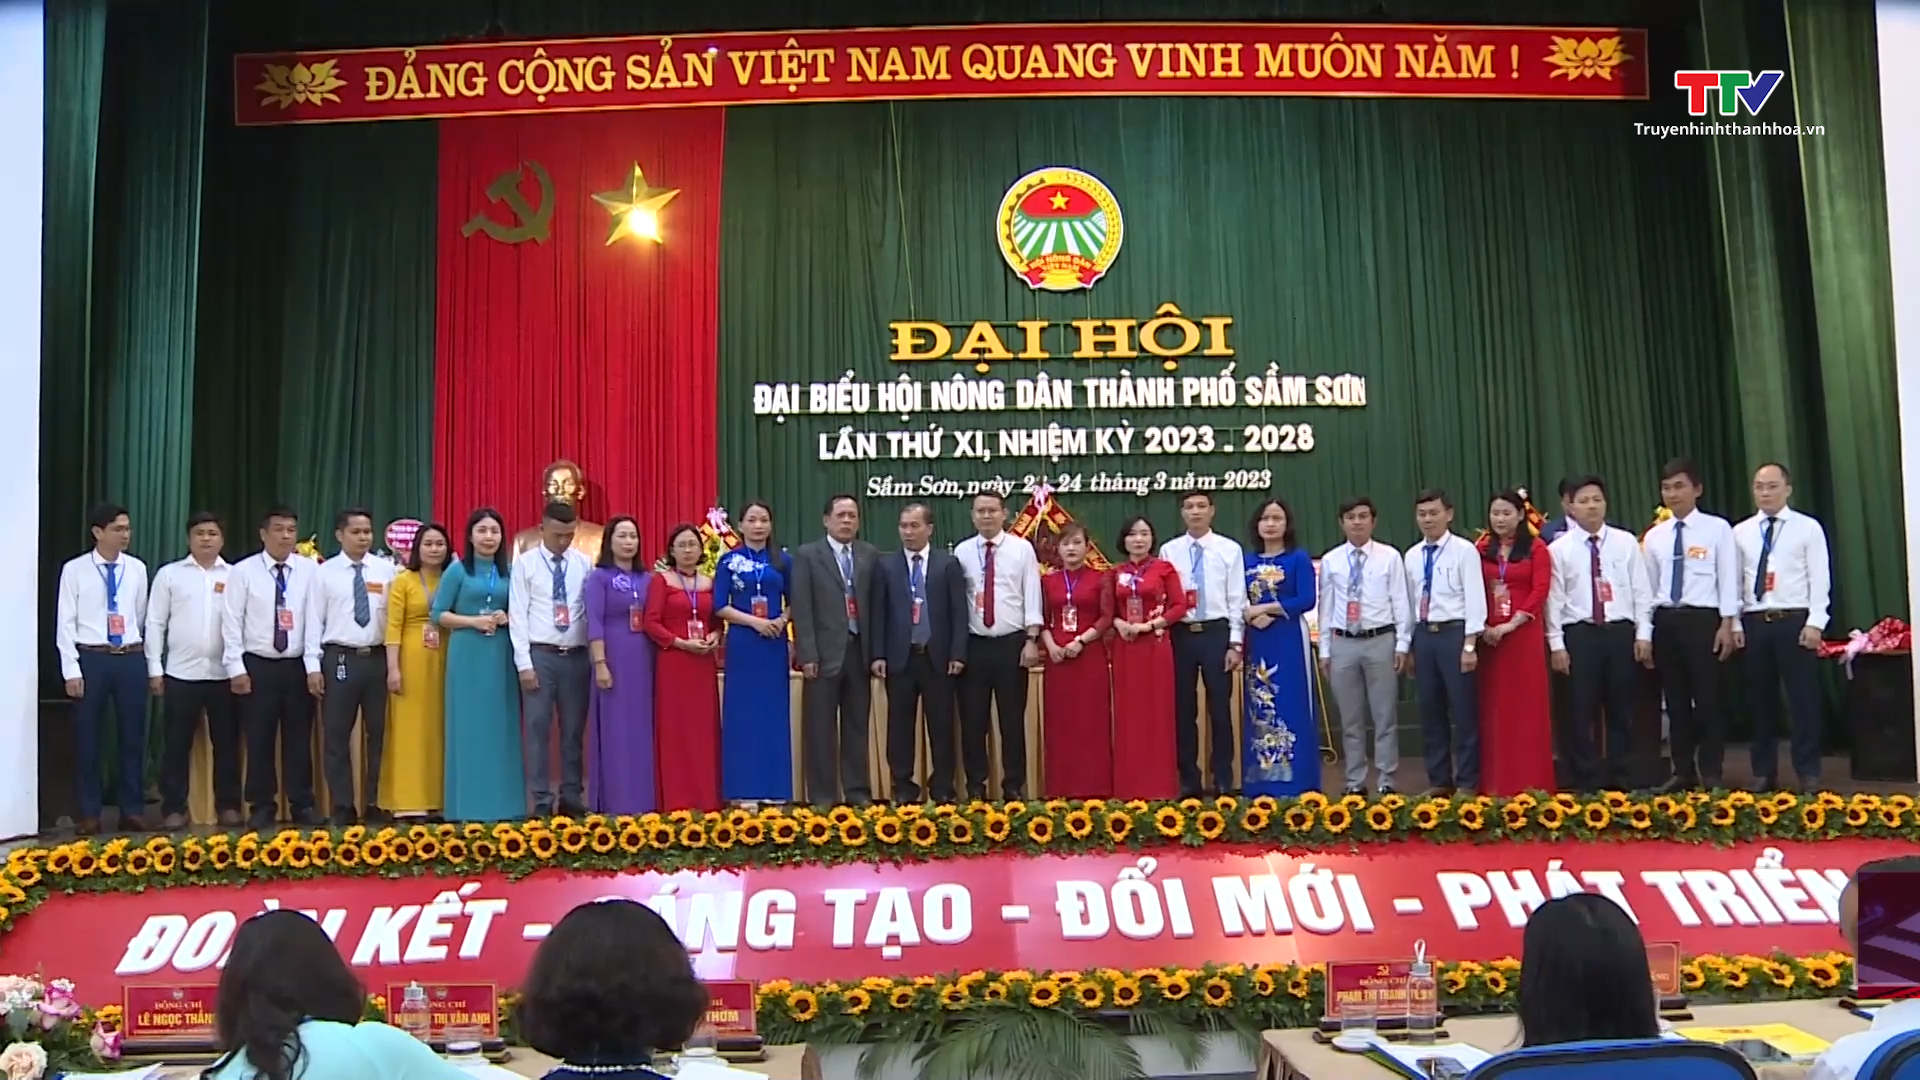 Đại Hội đại biểu Hội Nông dân thành phố Sầm Sơn, nhiệm kỳ 2023-2028 - Ảnh 3.